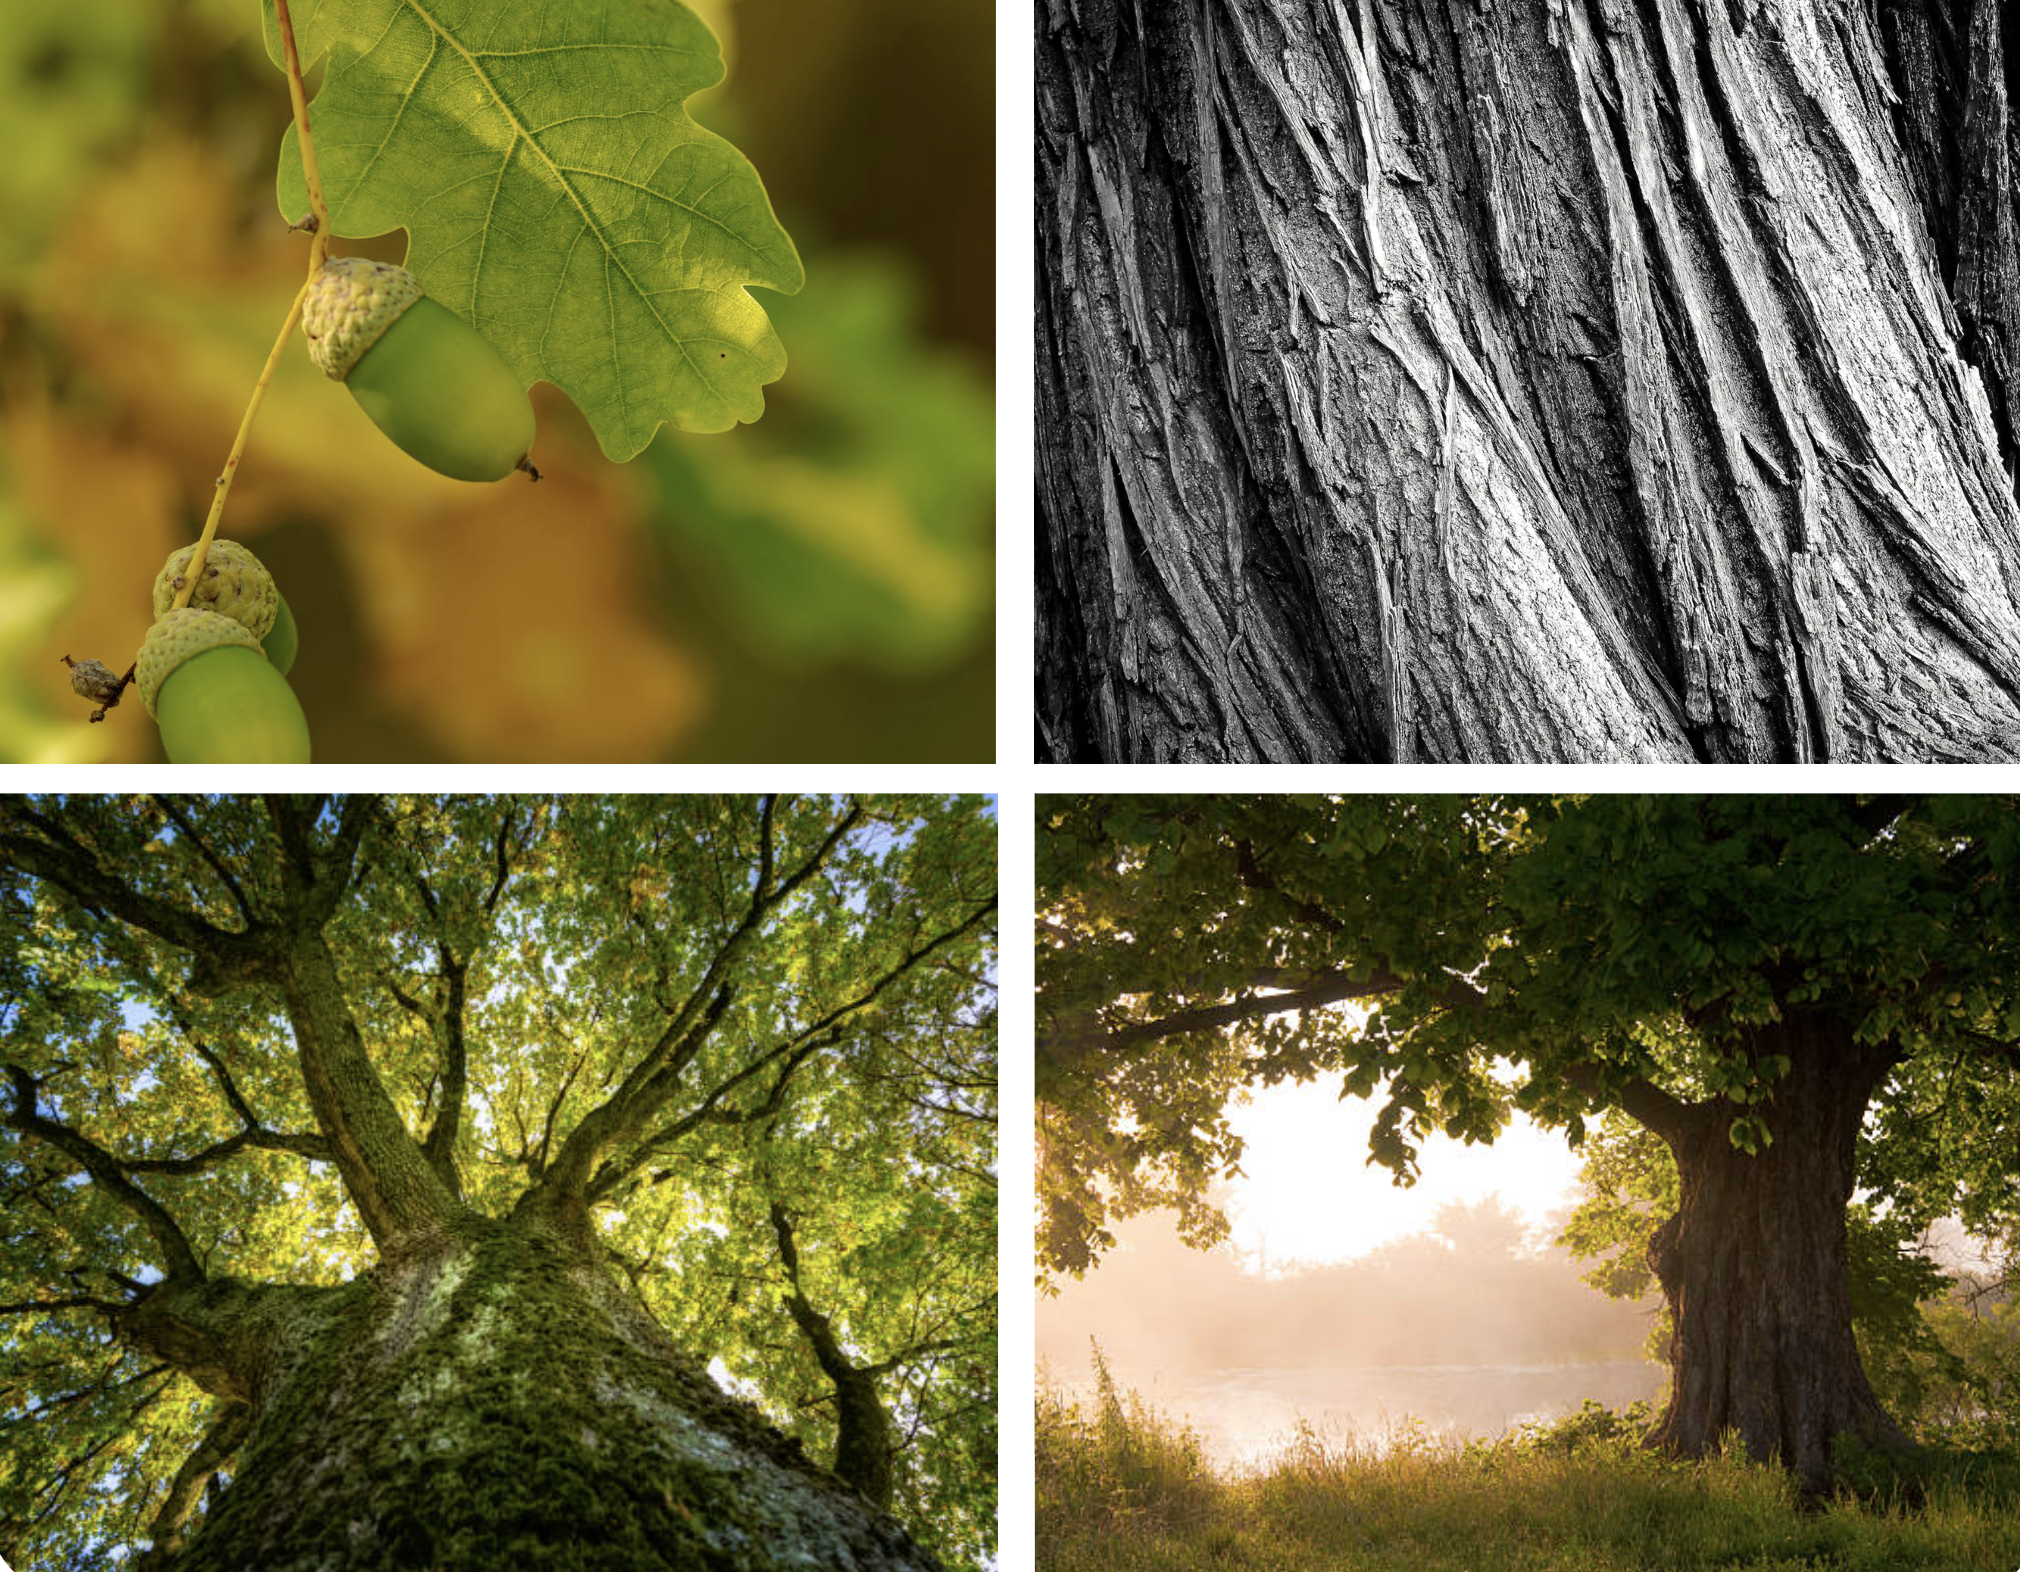 Post Oak: a Valuable Texas Tree by AgriLife’s Mario Villarino